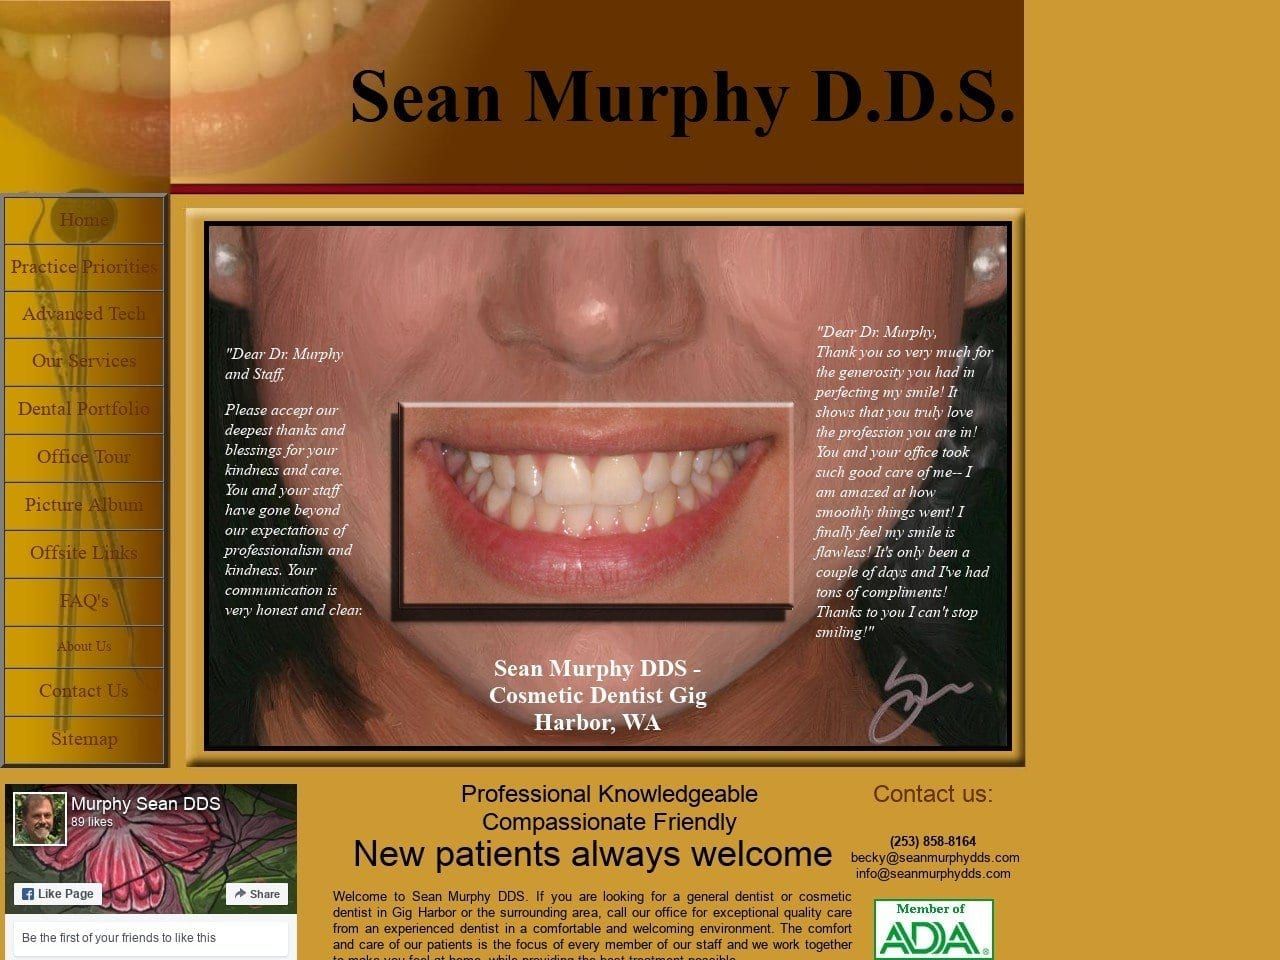 Sean Murphy DDS Website Screenshot from seanmurphydds.com